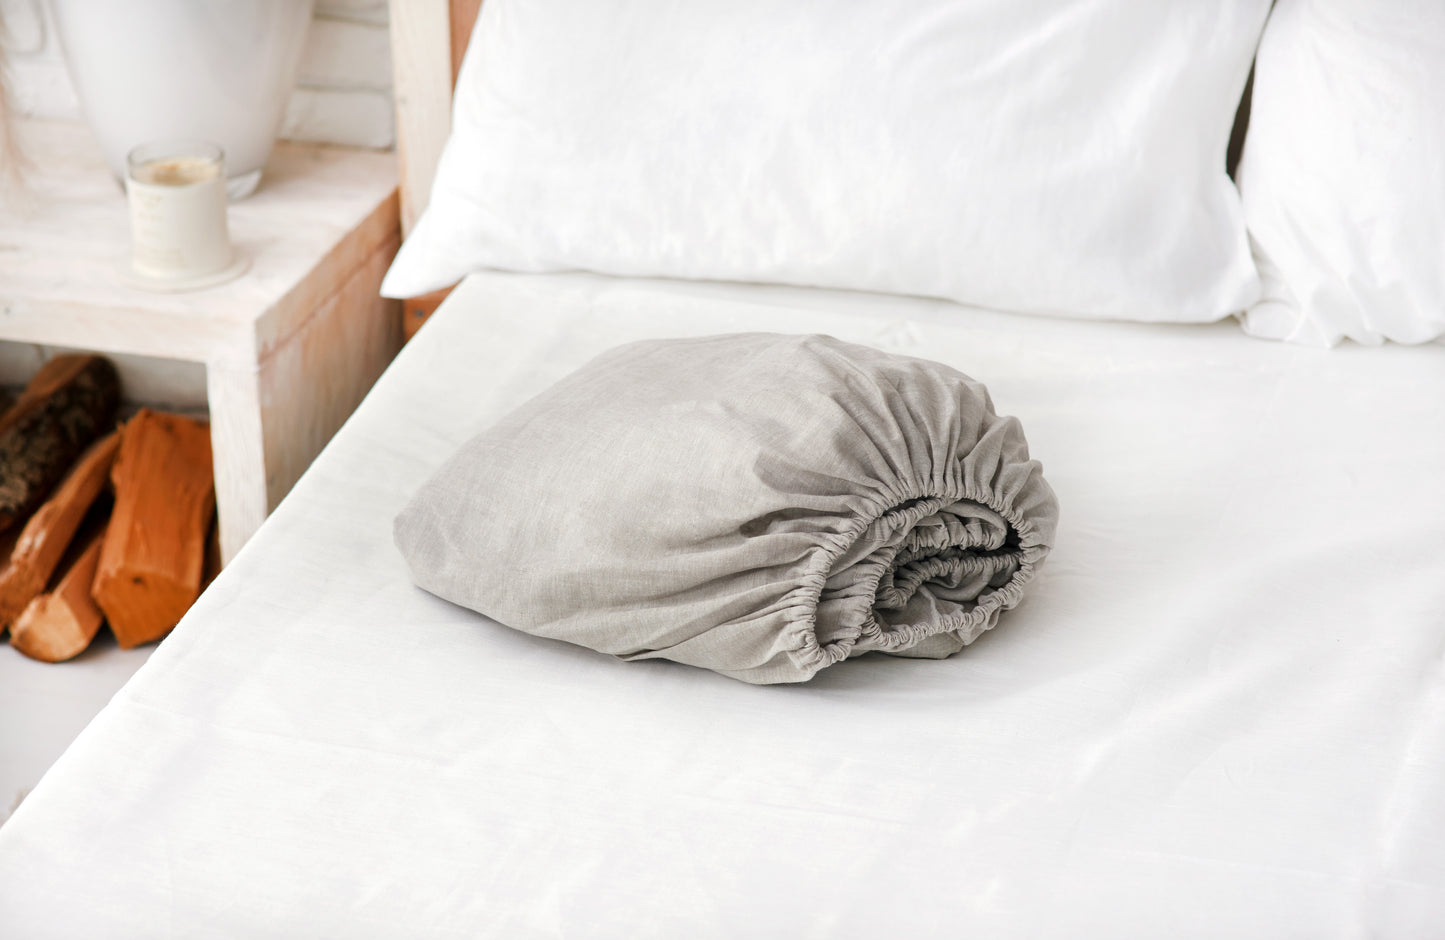 Natural linen bedding: Fitted sheet, Flat sheet, Pillowcase or Set